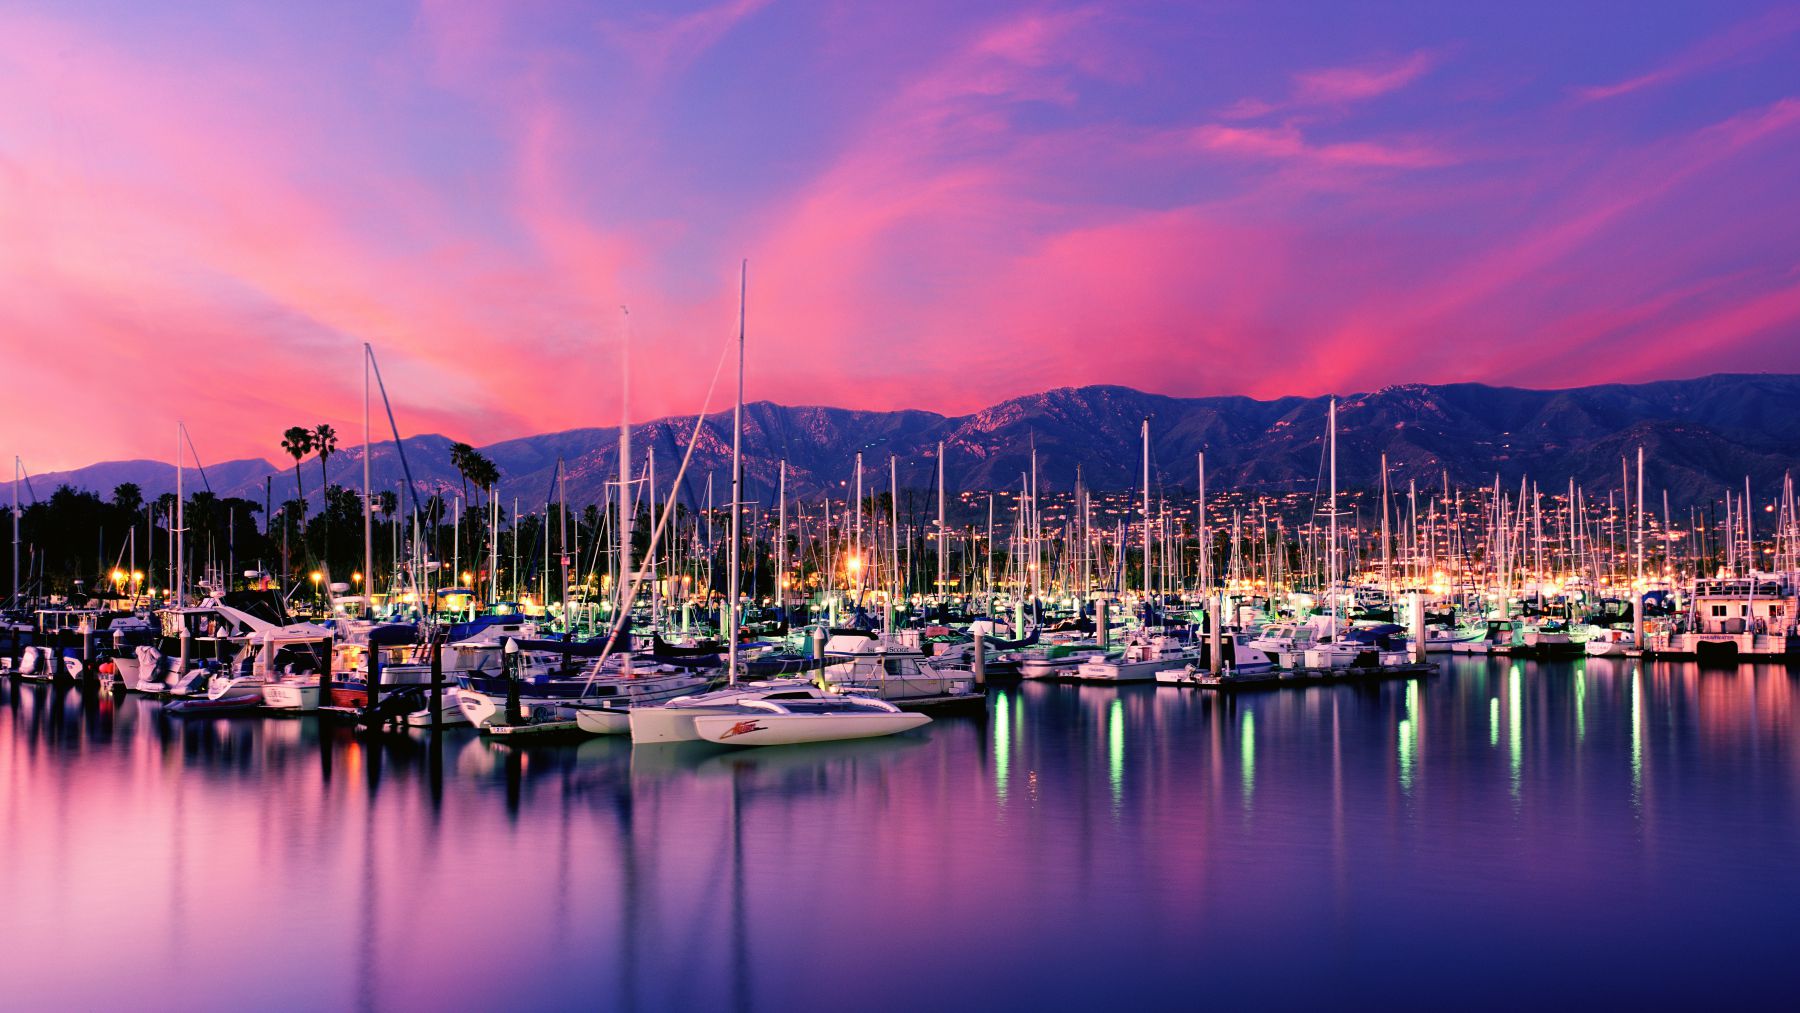 A photo of the Santa Barbara harbor at sunset